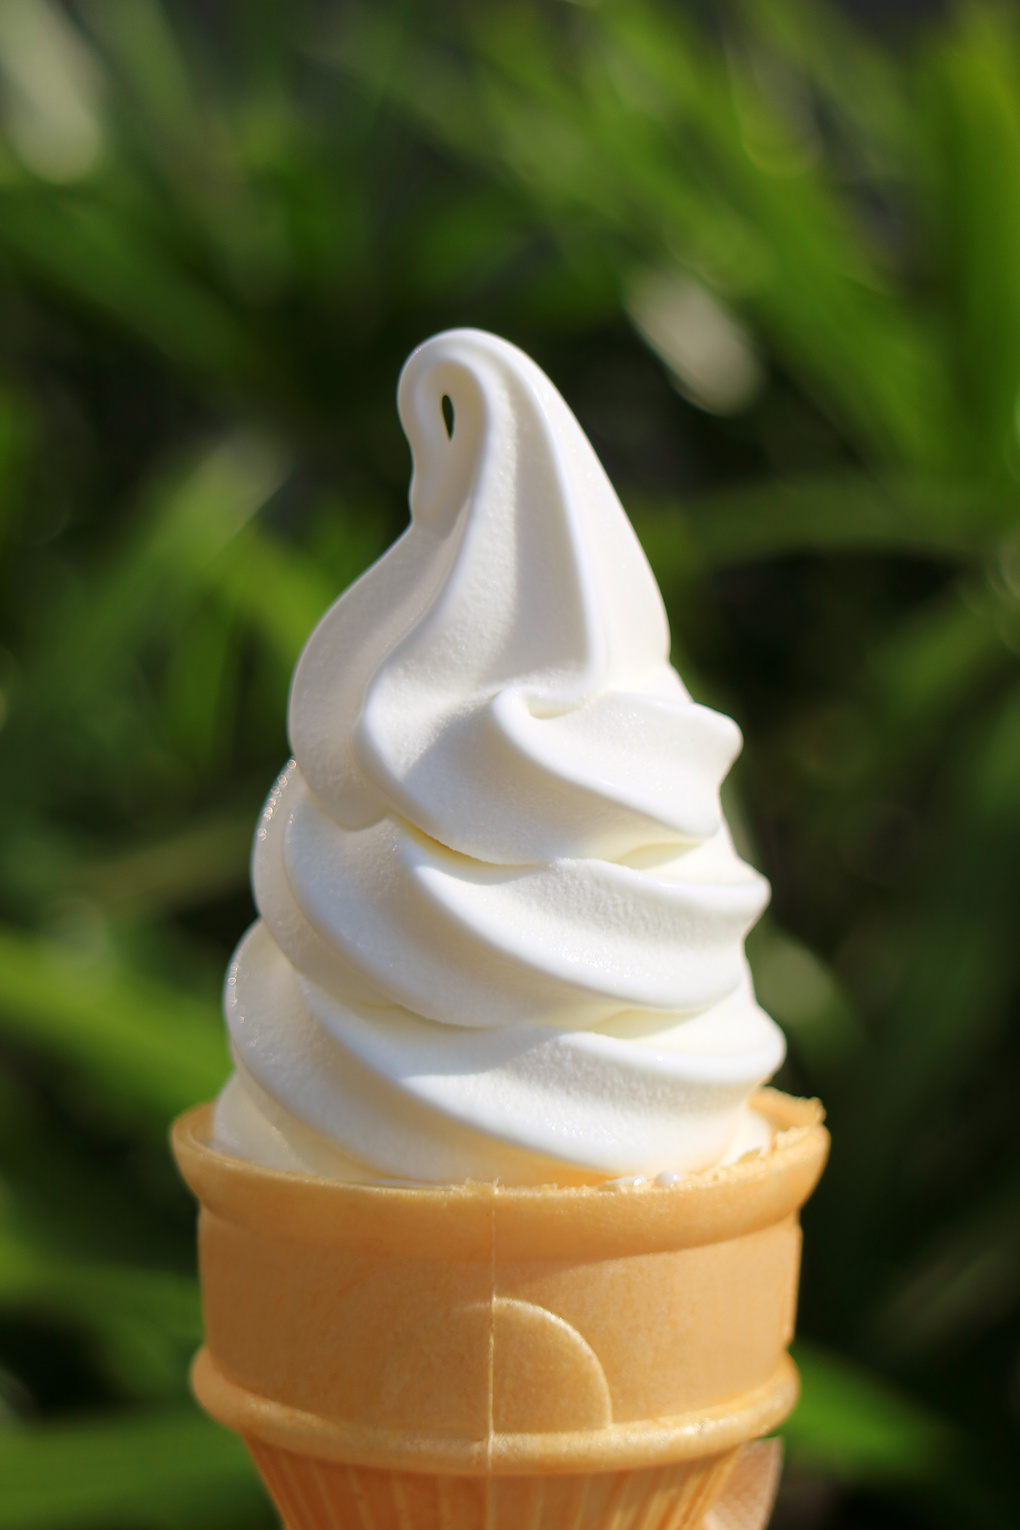 Vanilla soft serve ice cream cone in the sunlight